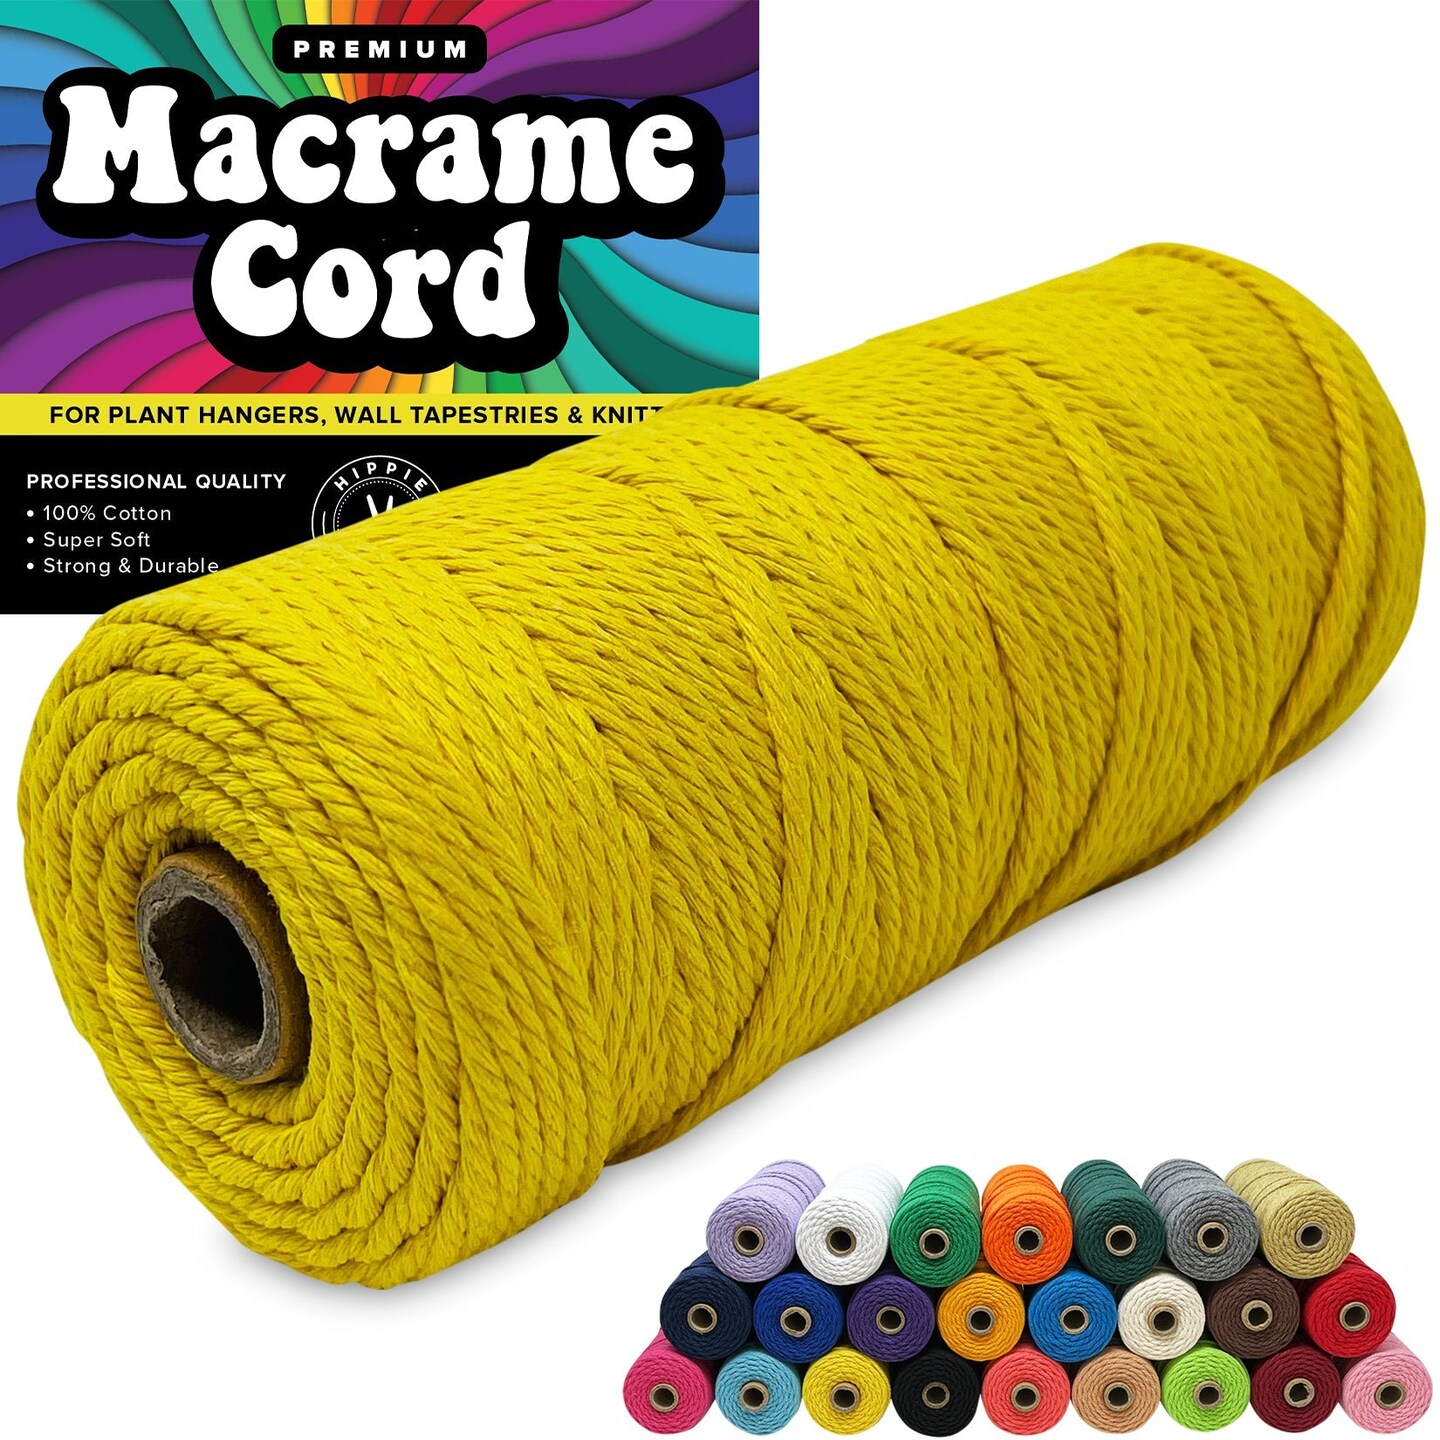 3 Mm Macrame Cord Macrame Yarn Macrame Rope Chunky Yarn 